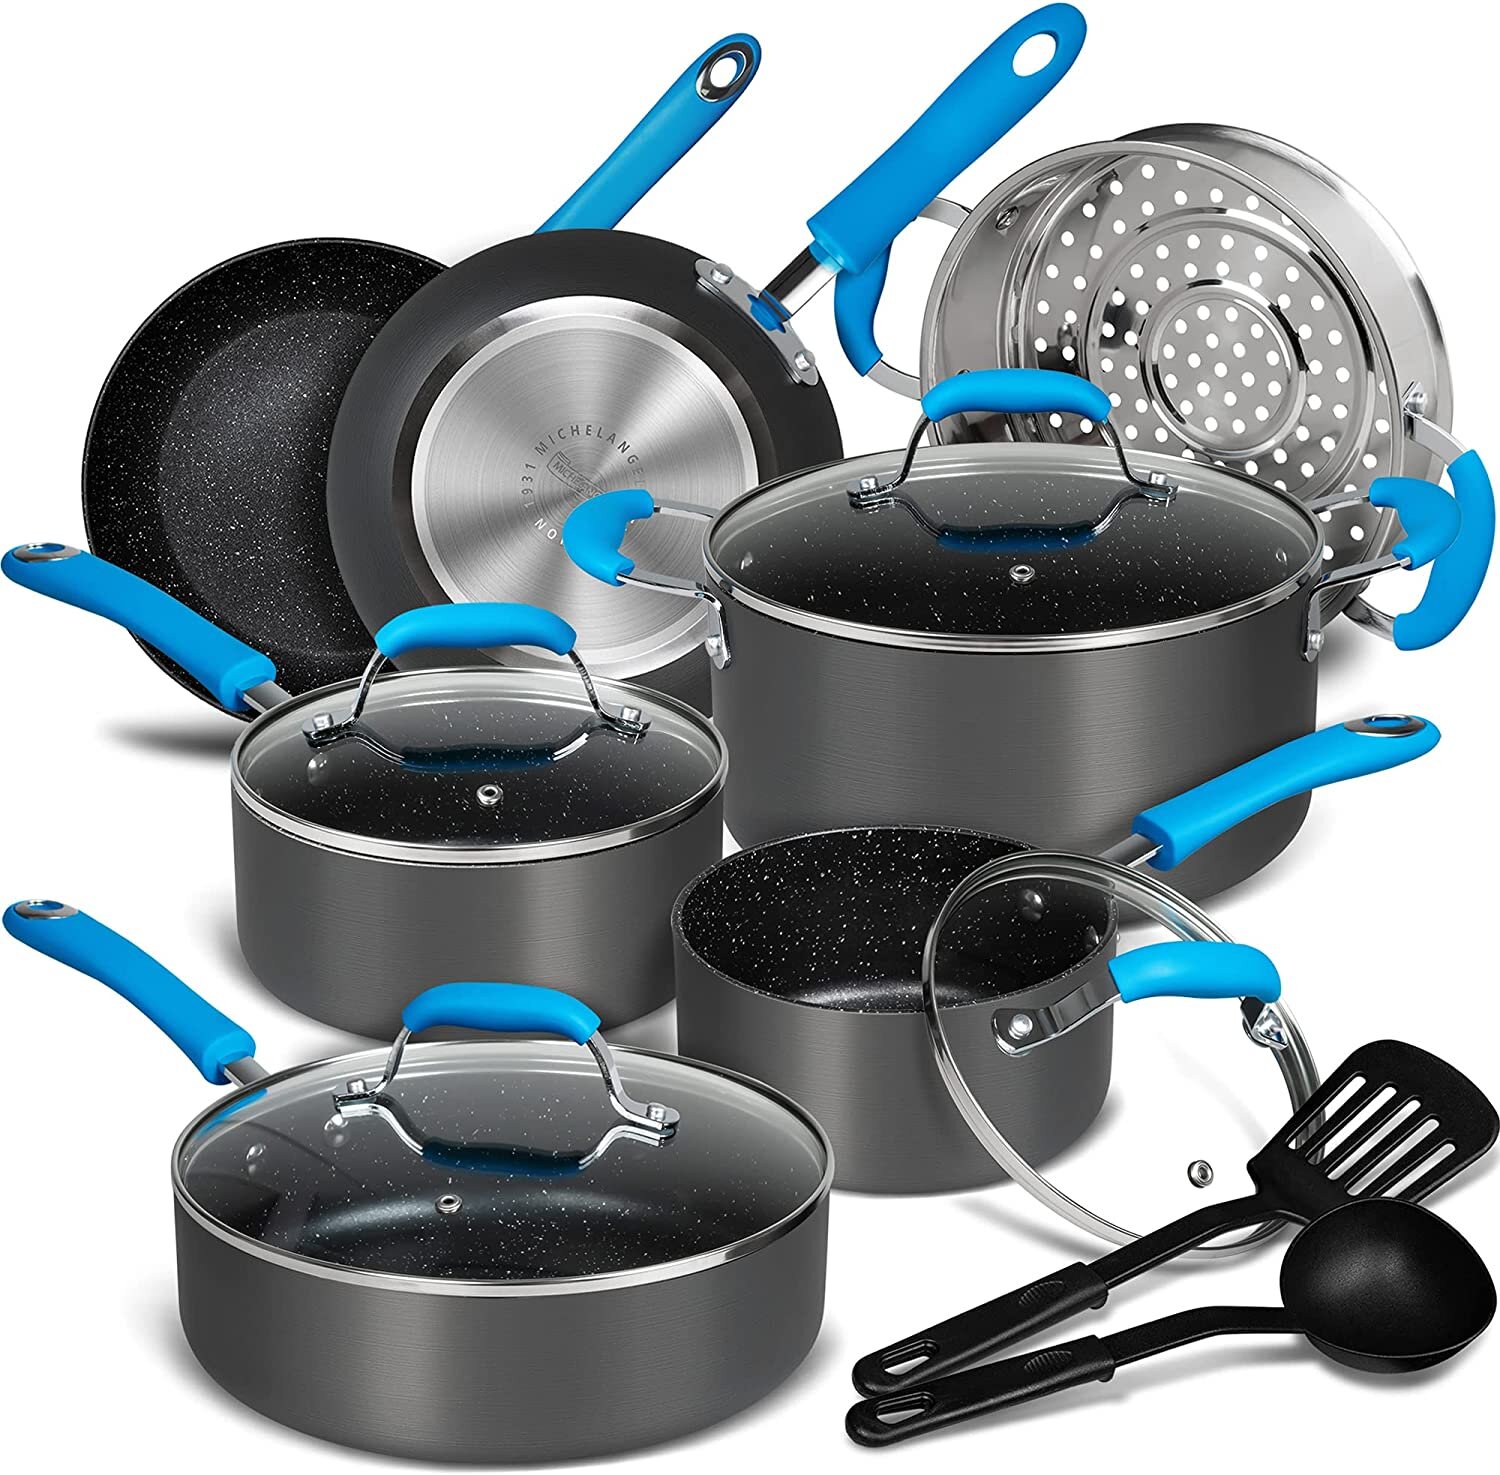 https://assets.wfcdn.com/im/17729492/compr-r85/1930/193087011/13-piece-non-stick-hard-anodized-aluminum-cookware-set.jpg